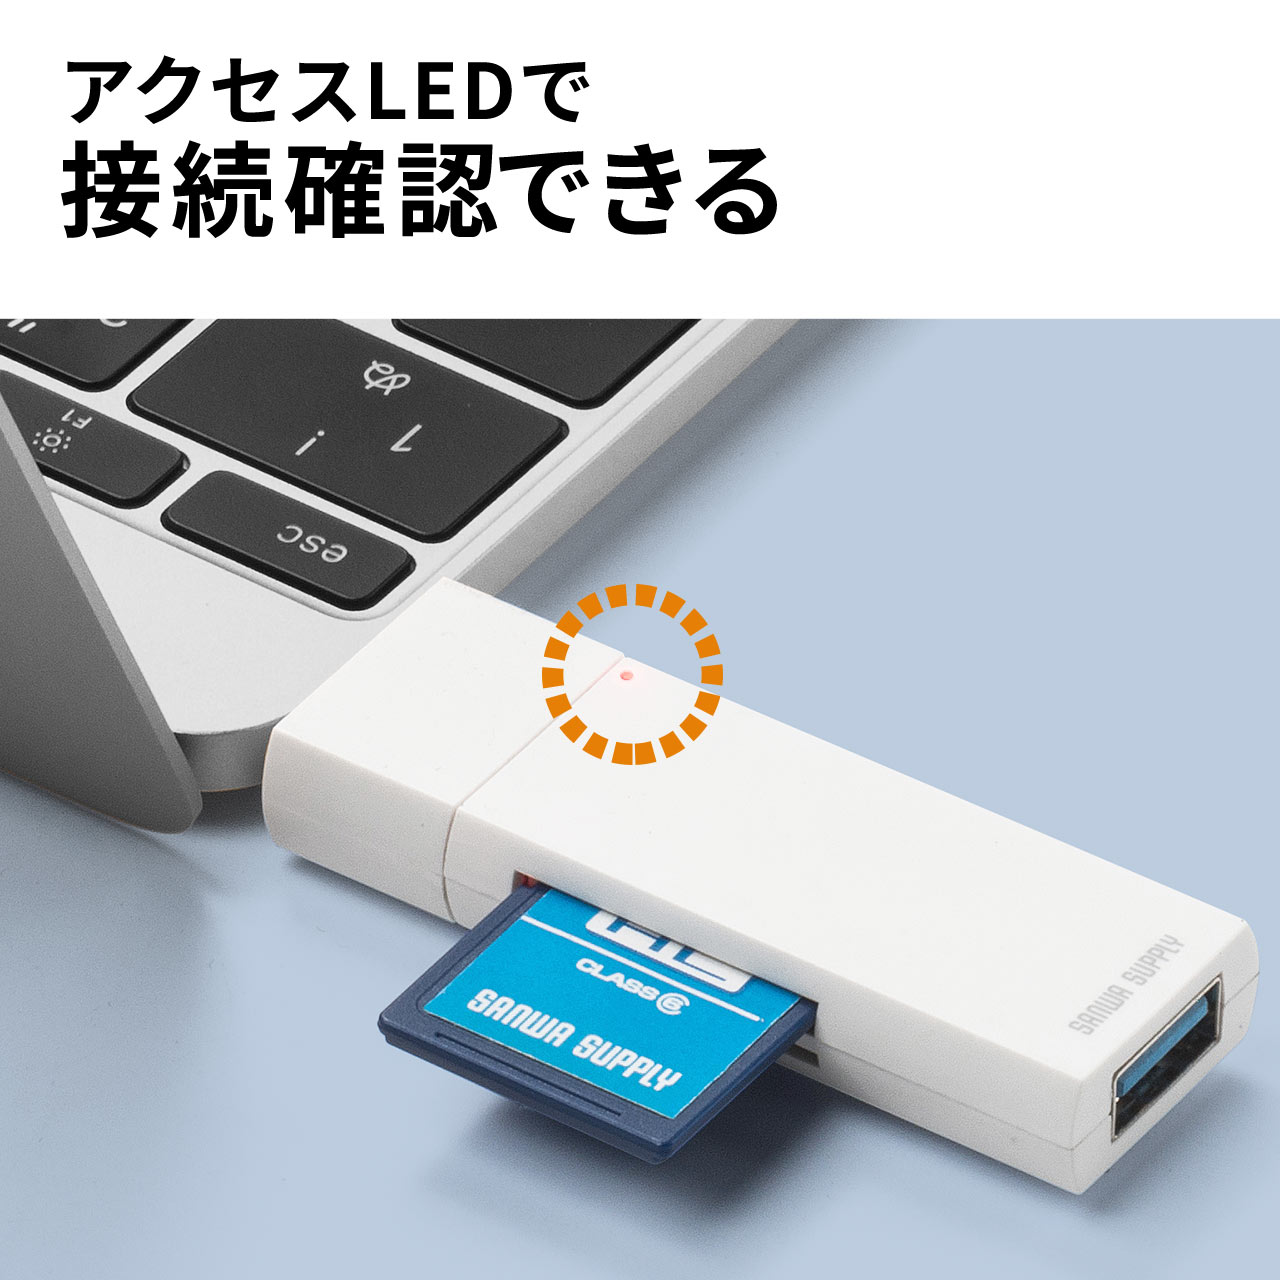 Pan's USB-A Cモジュールリーダー USB 3.2 Gen 2 ワークフロー